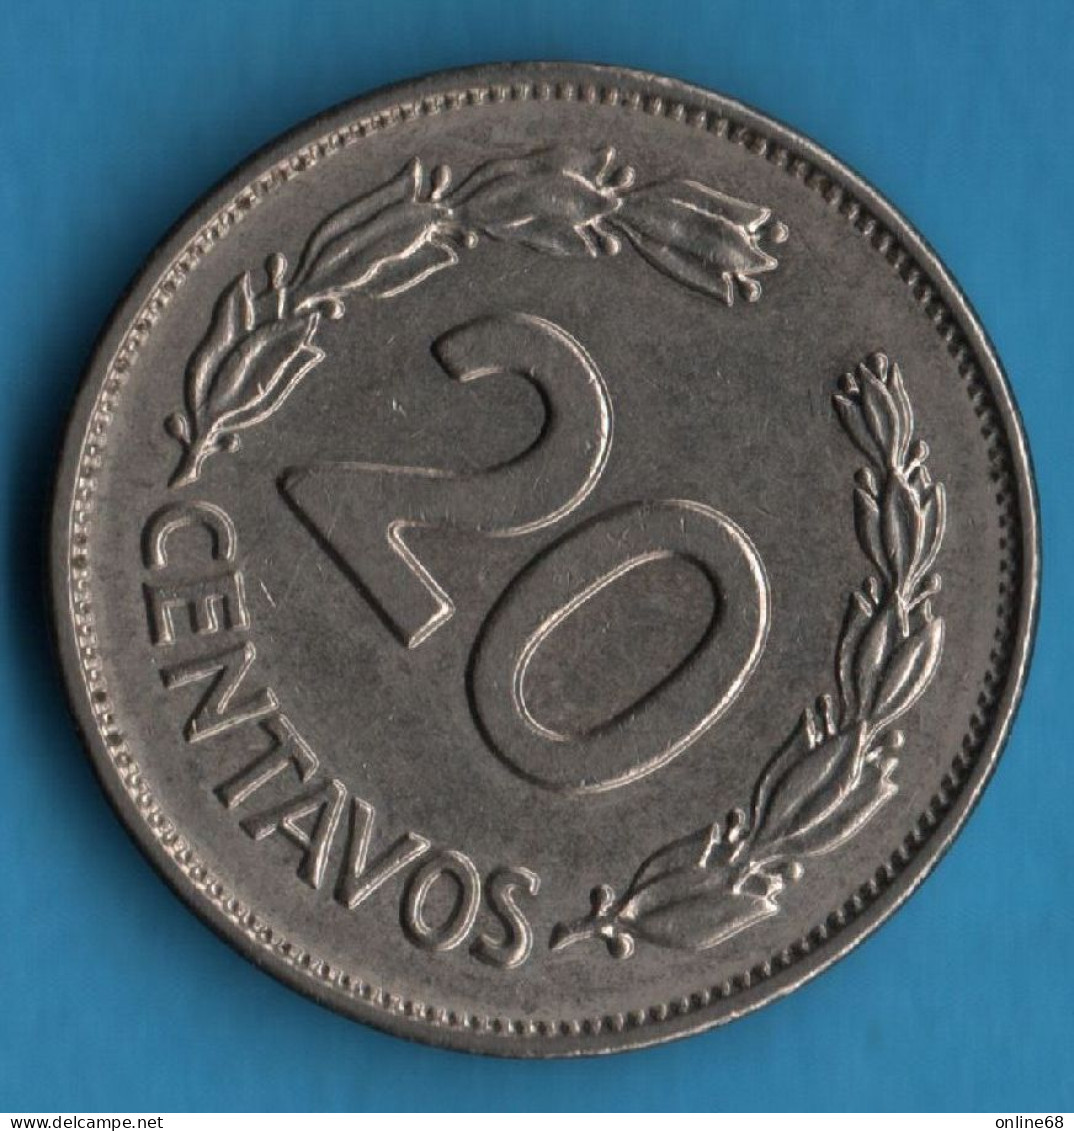 ECUADOR 20 CENTAVOS 1972 KM# 77.1c - Ecuador